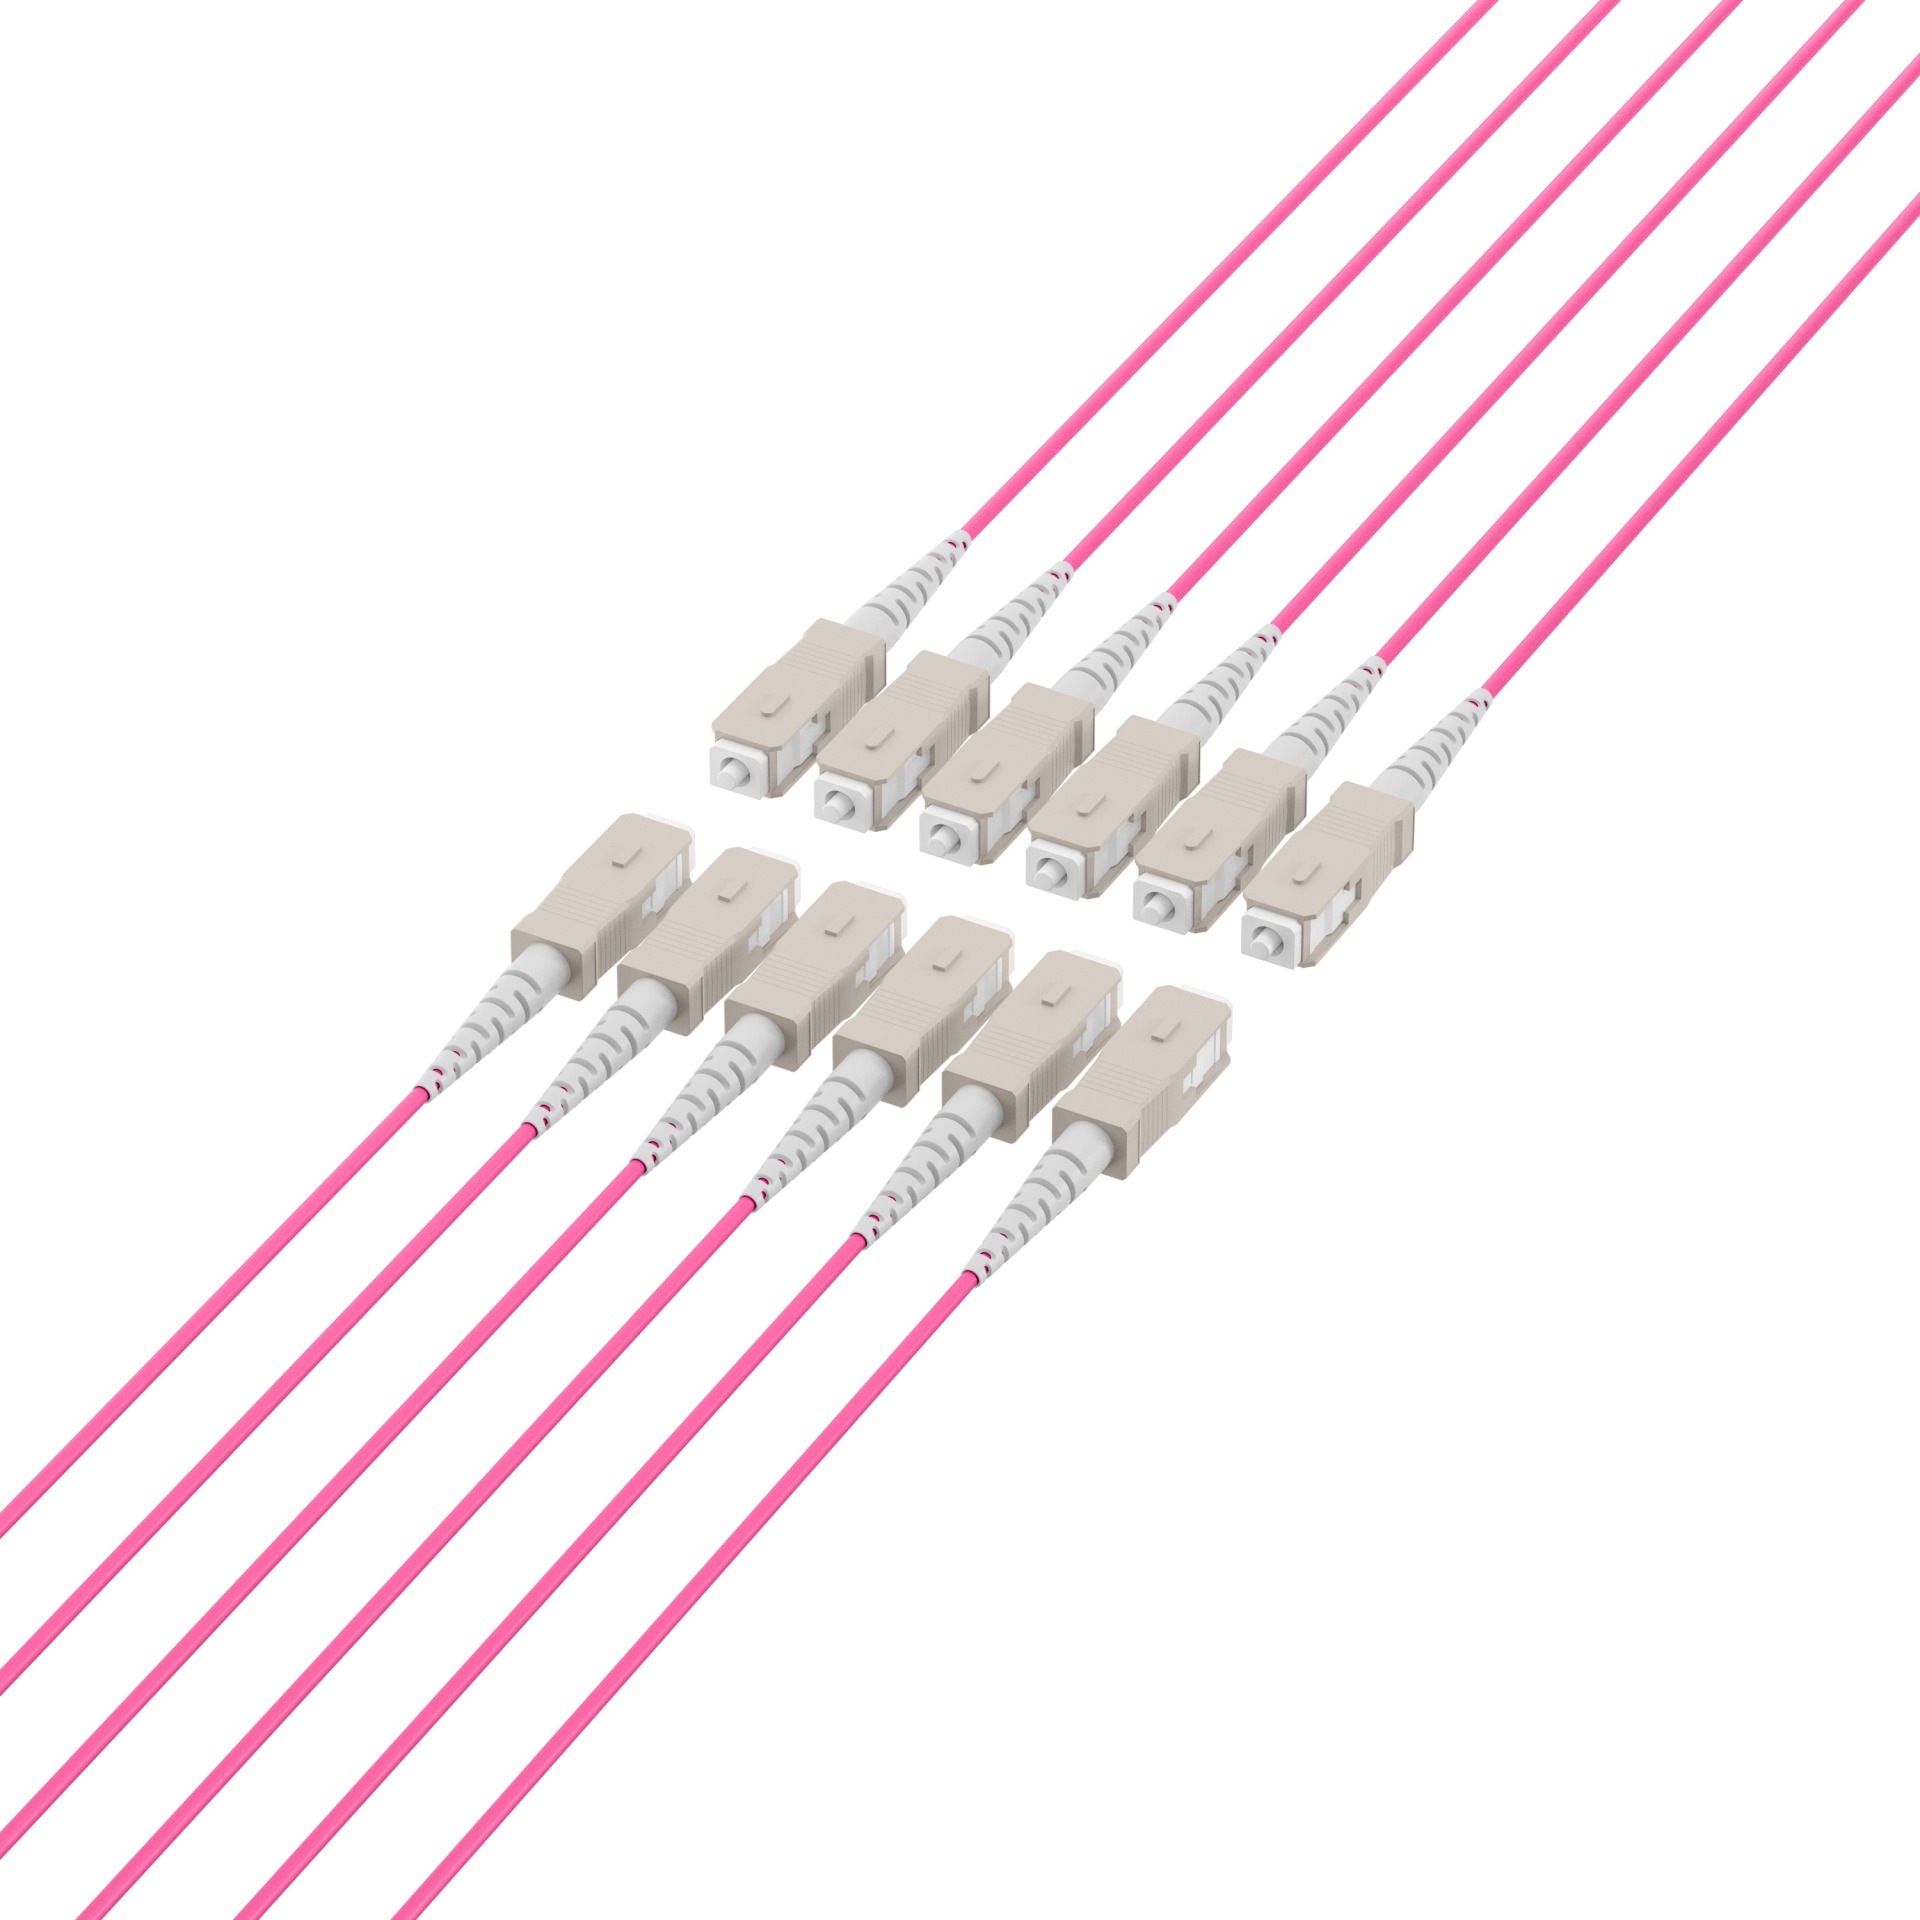 Trunk cable U-DQ(ZN)BH OM4 12G (1x12) SC-SC,50m Dca LSZH